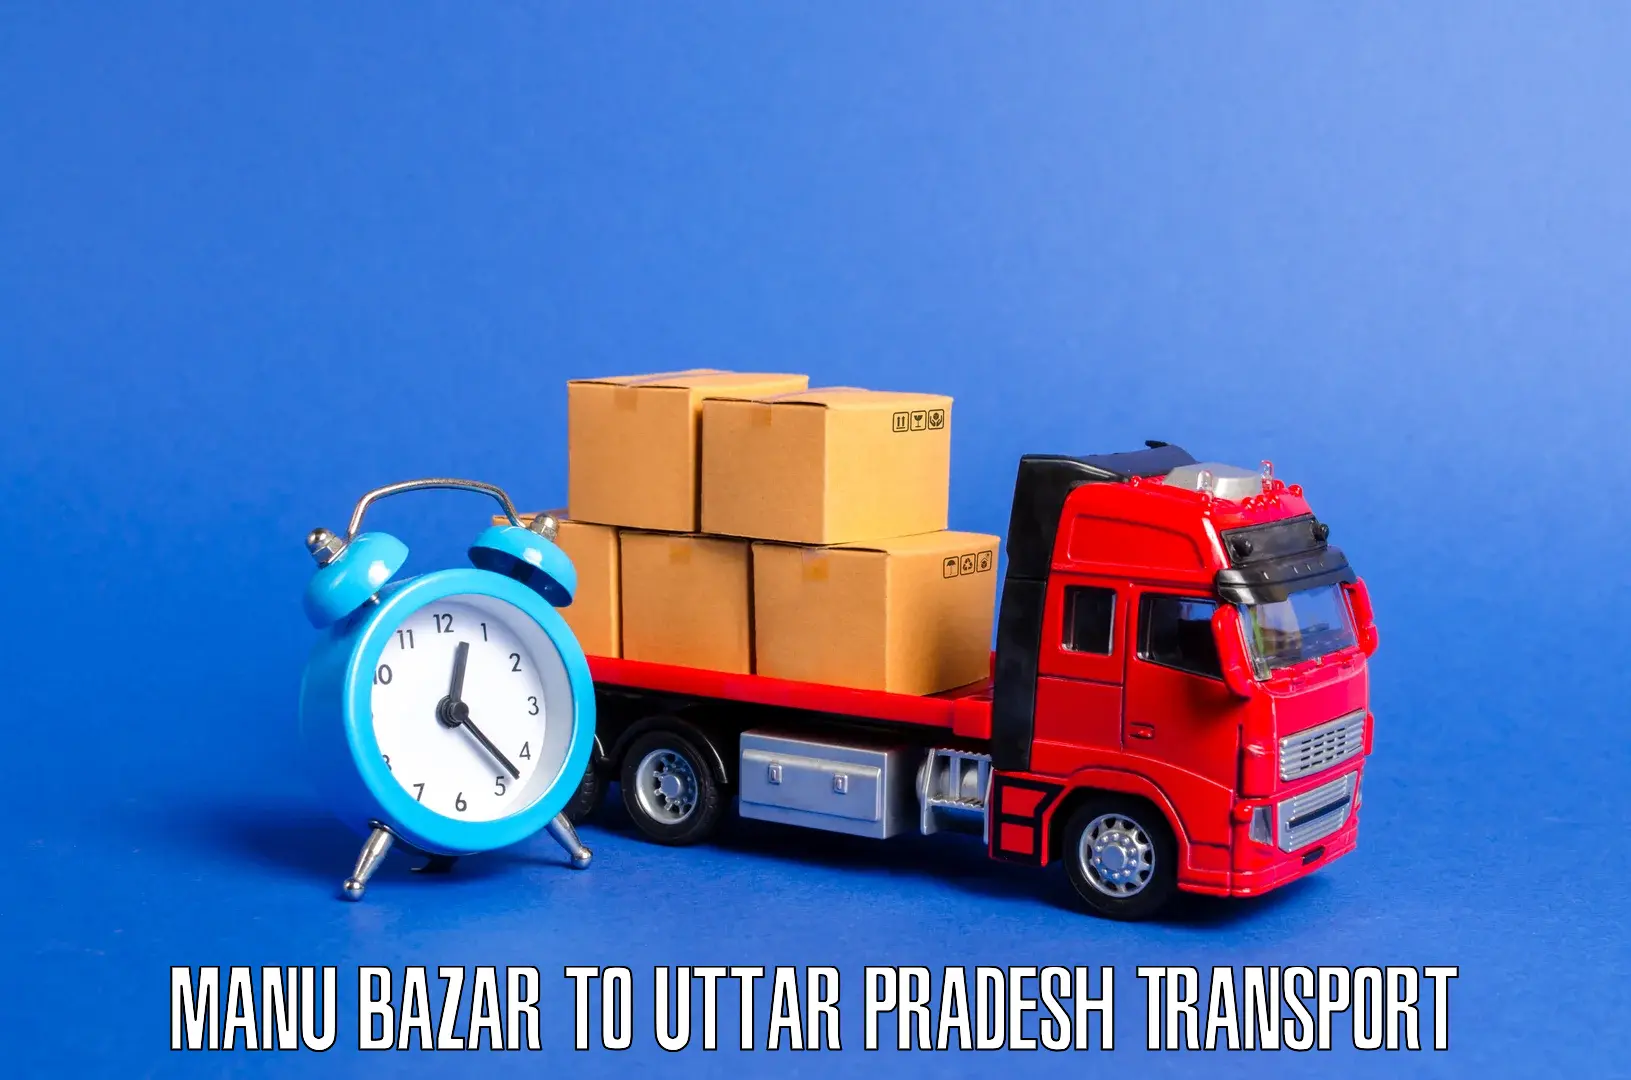 Land transport services Manu Bazar to Kuru